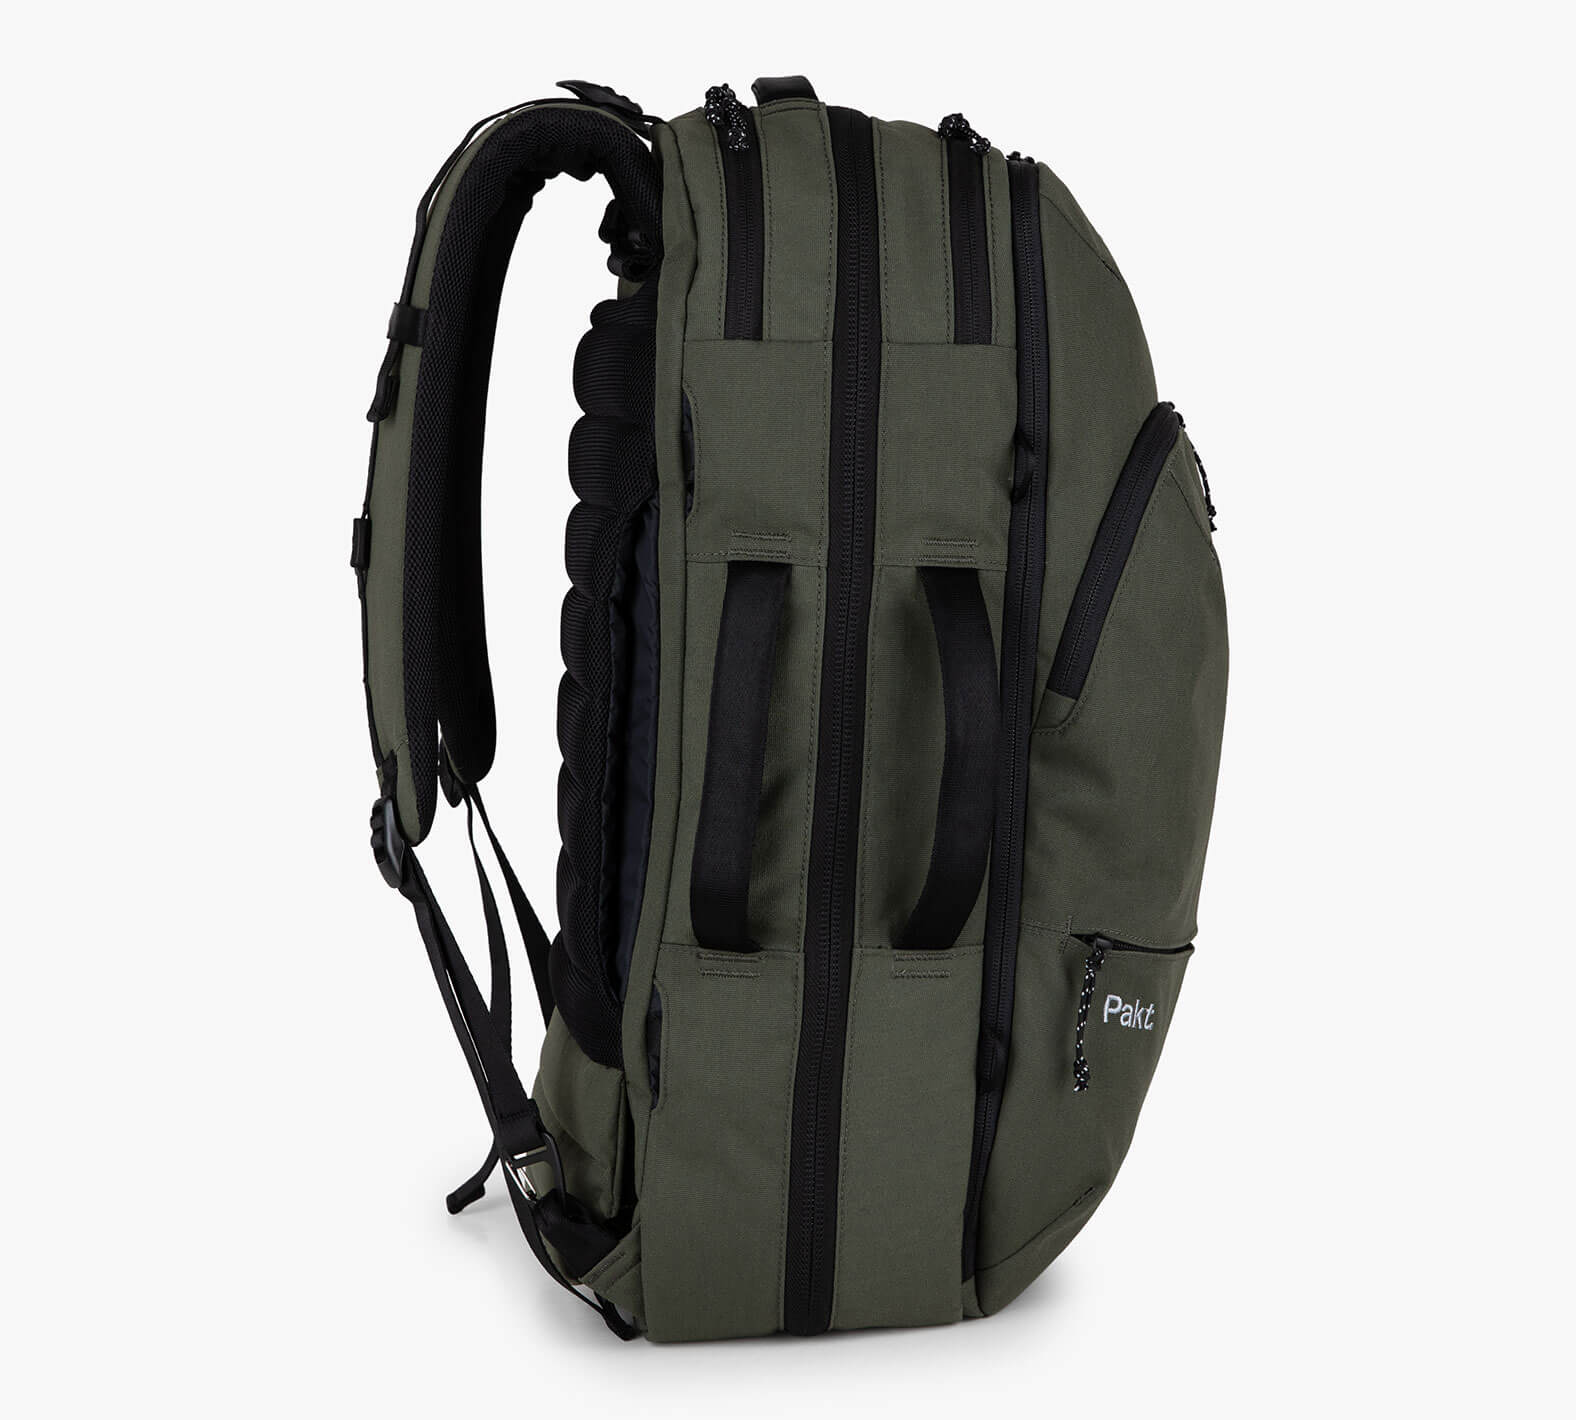 Pakt Travel Backpack (45L, Forest)